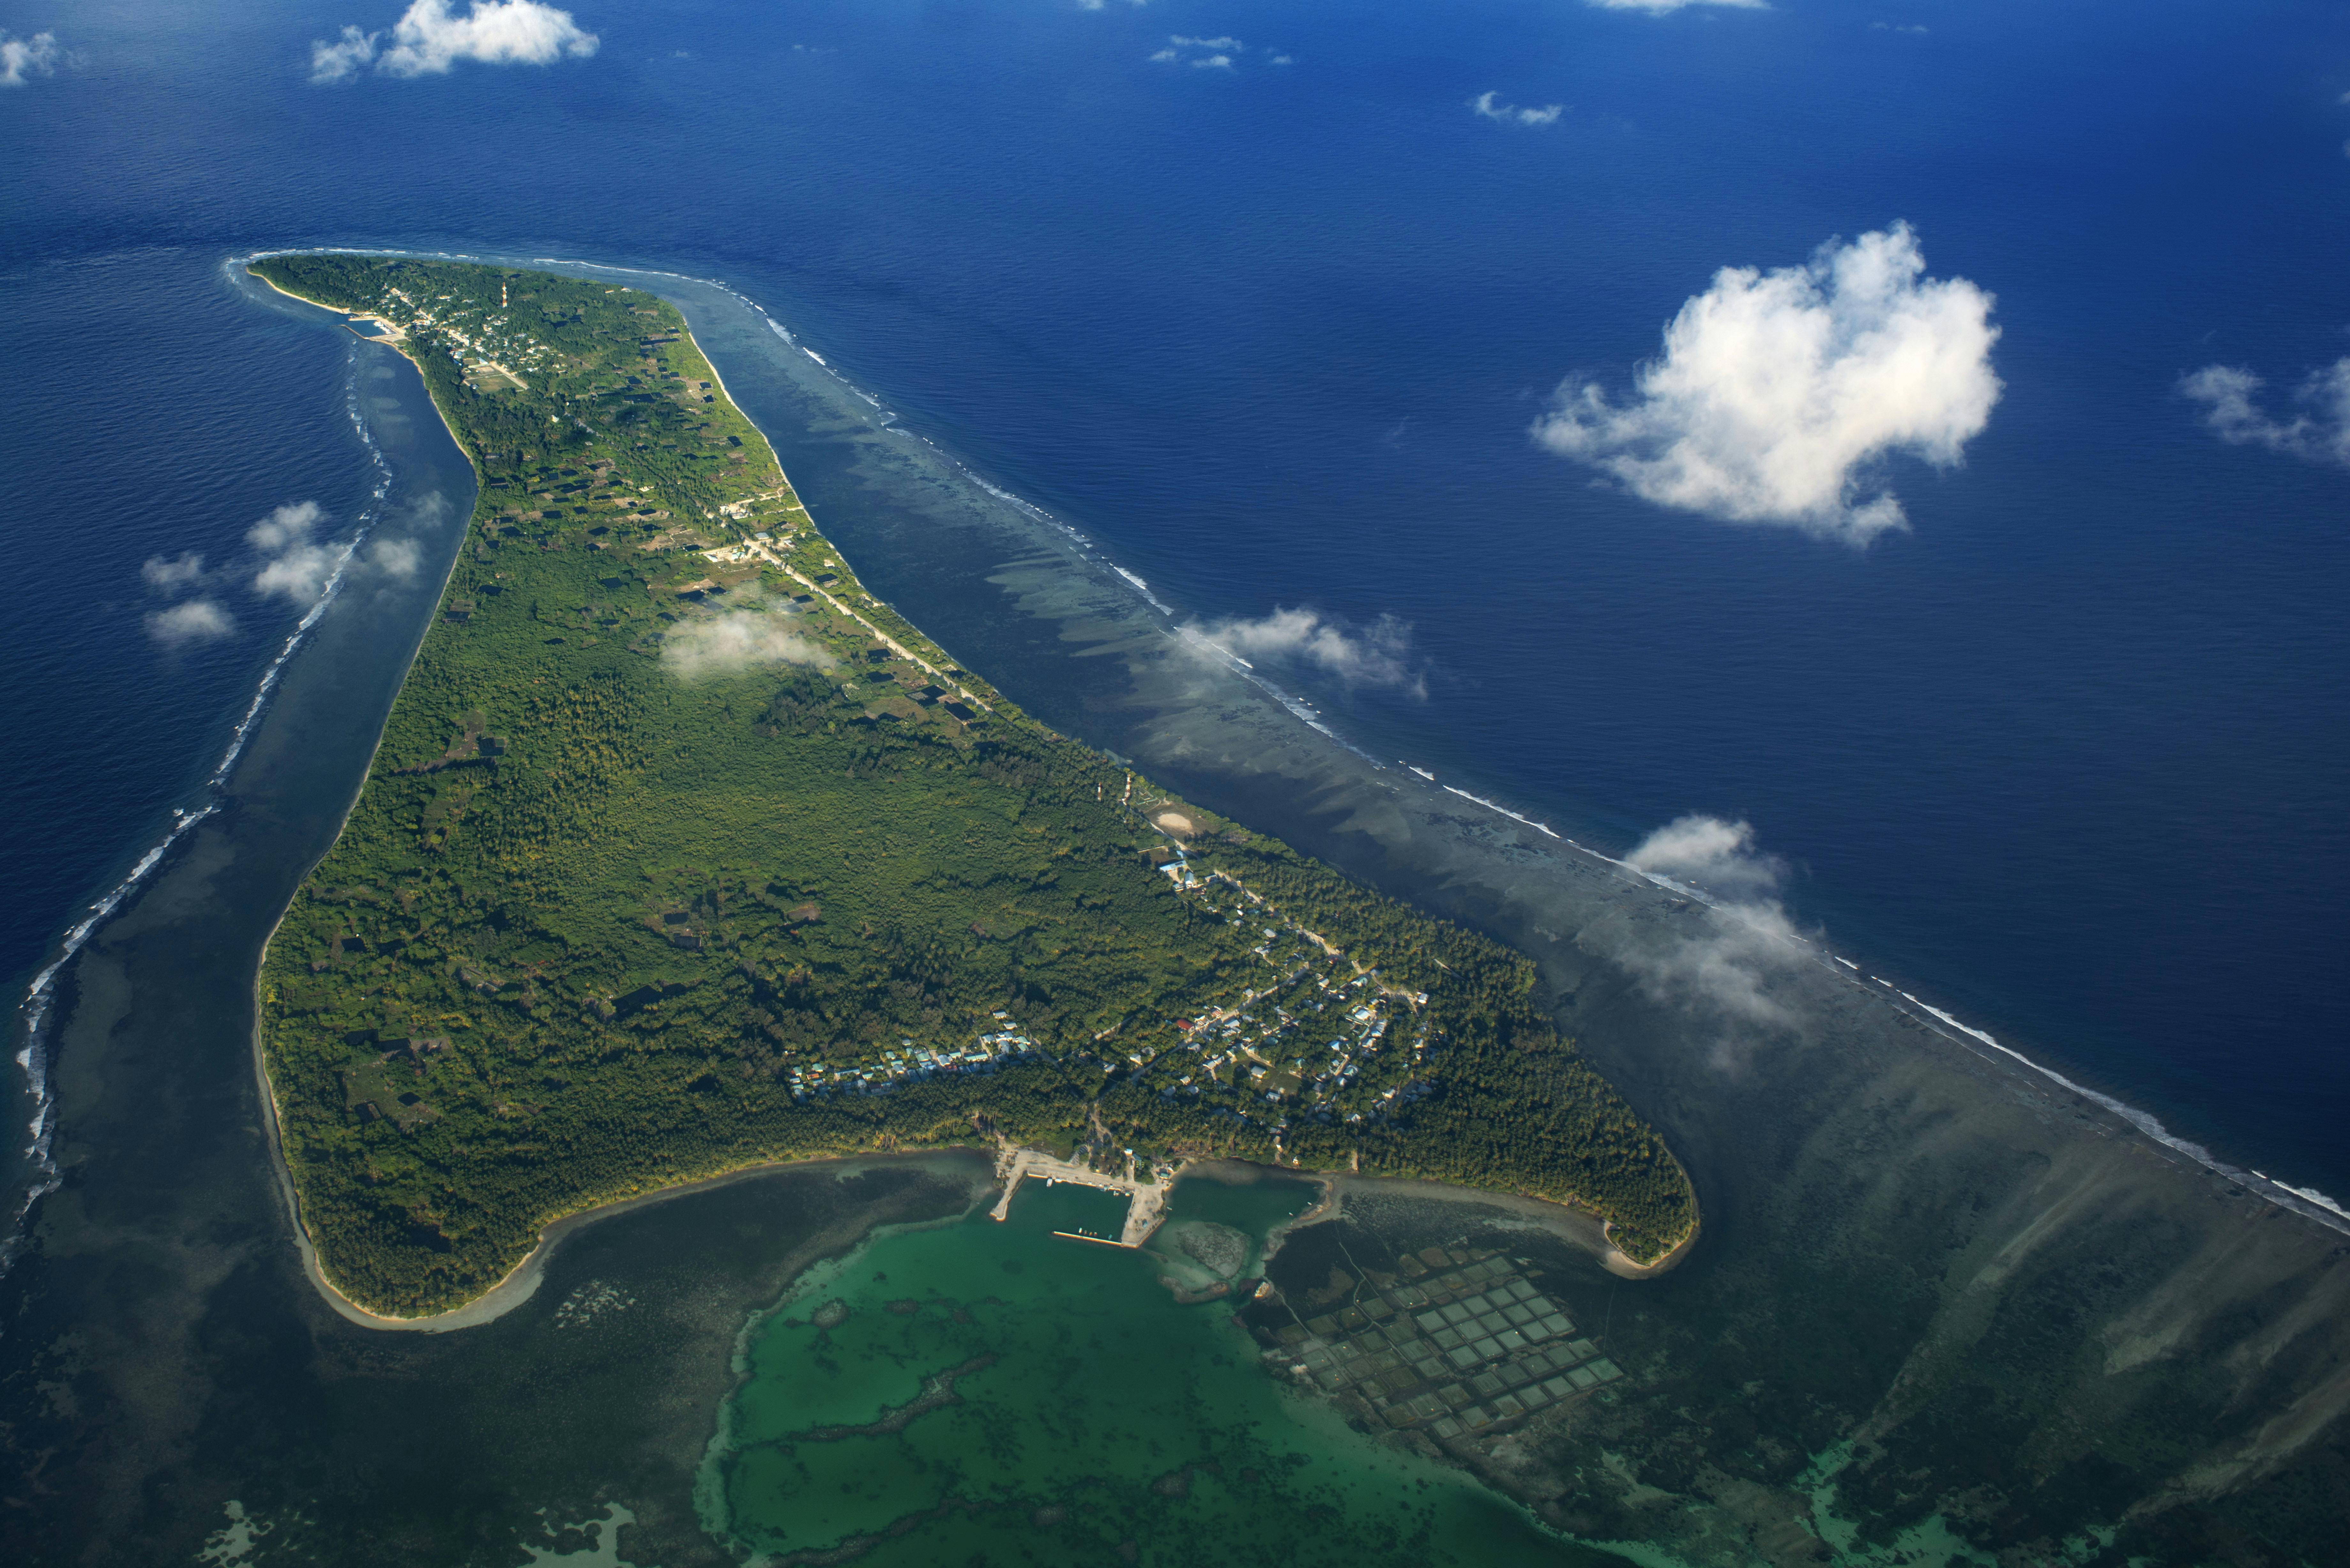 Lavtliggende områder såsom Tuvalu og Salomonøerne kan over tid bliver oversvømmet, hvilket vil ødelægge landbrugsjord og beboede områder, hvor indbyggerne ikke har mulighed for at søge mod højere områder.